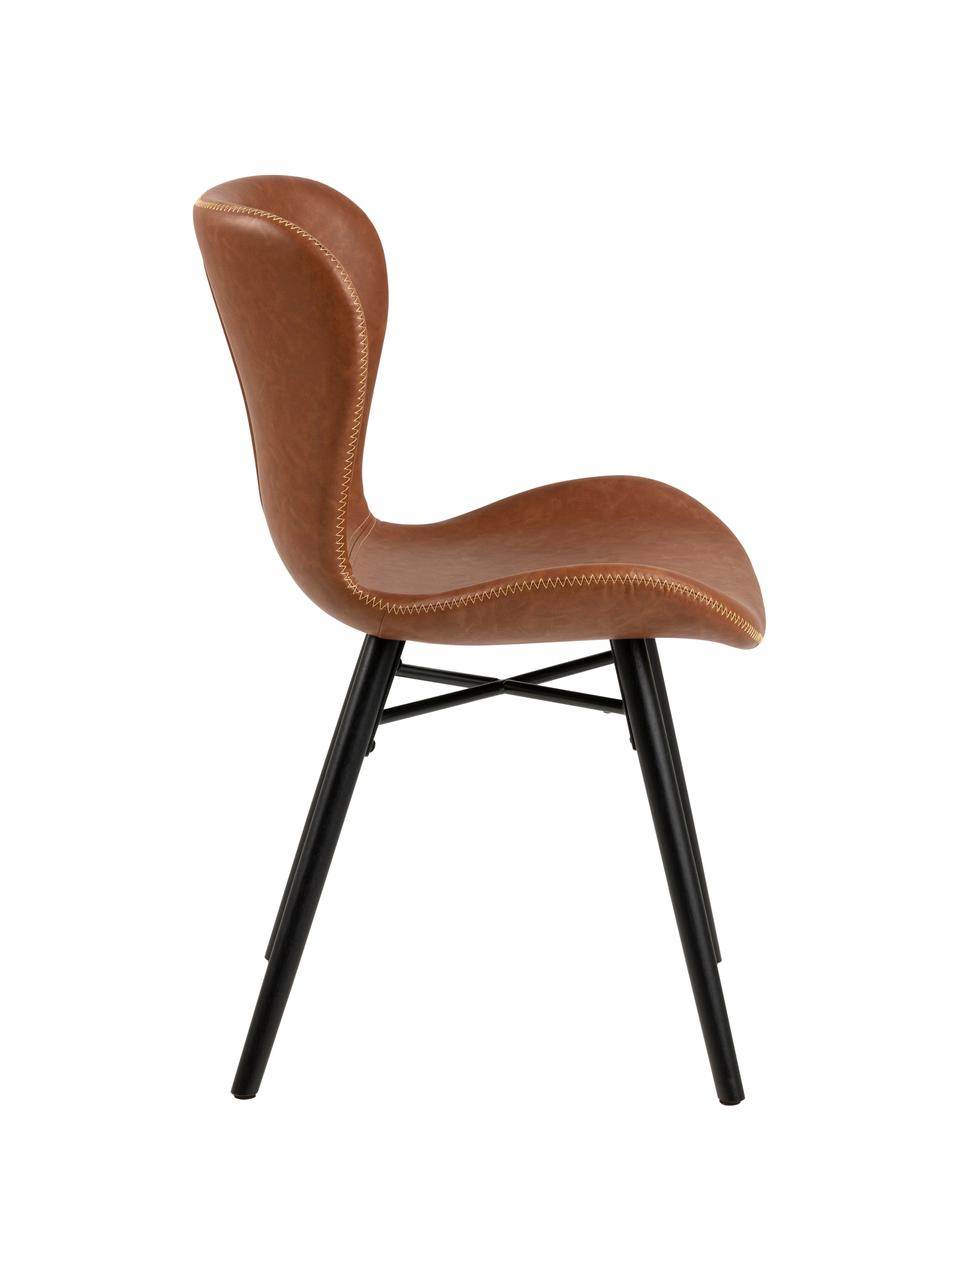 Kunstleren stoelen Batilda in cognackleur, 2 stuks, Bekleding: kunstleer (polyurethaan), Poten: rubberhout, gelakt, Kunstleer cognackleurig, B 47 x D 53 cm